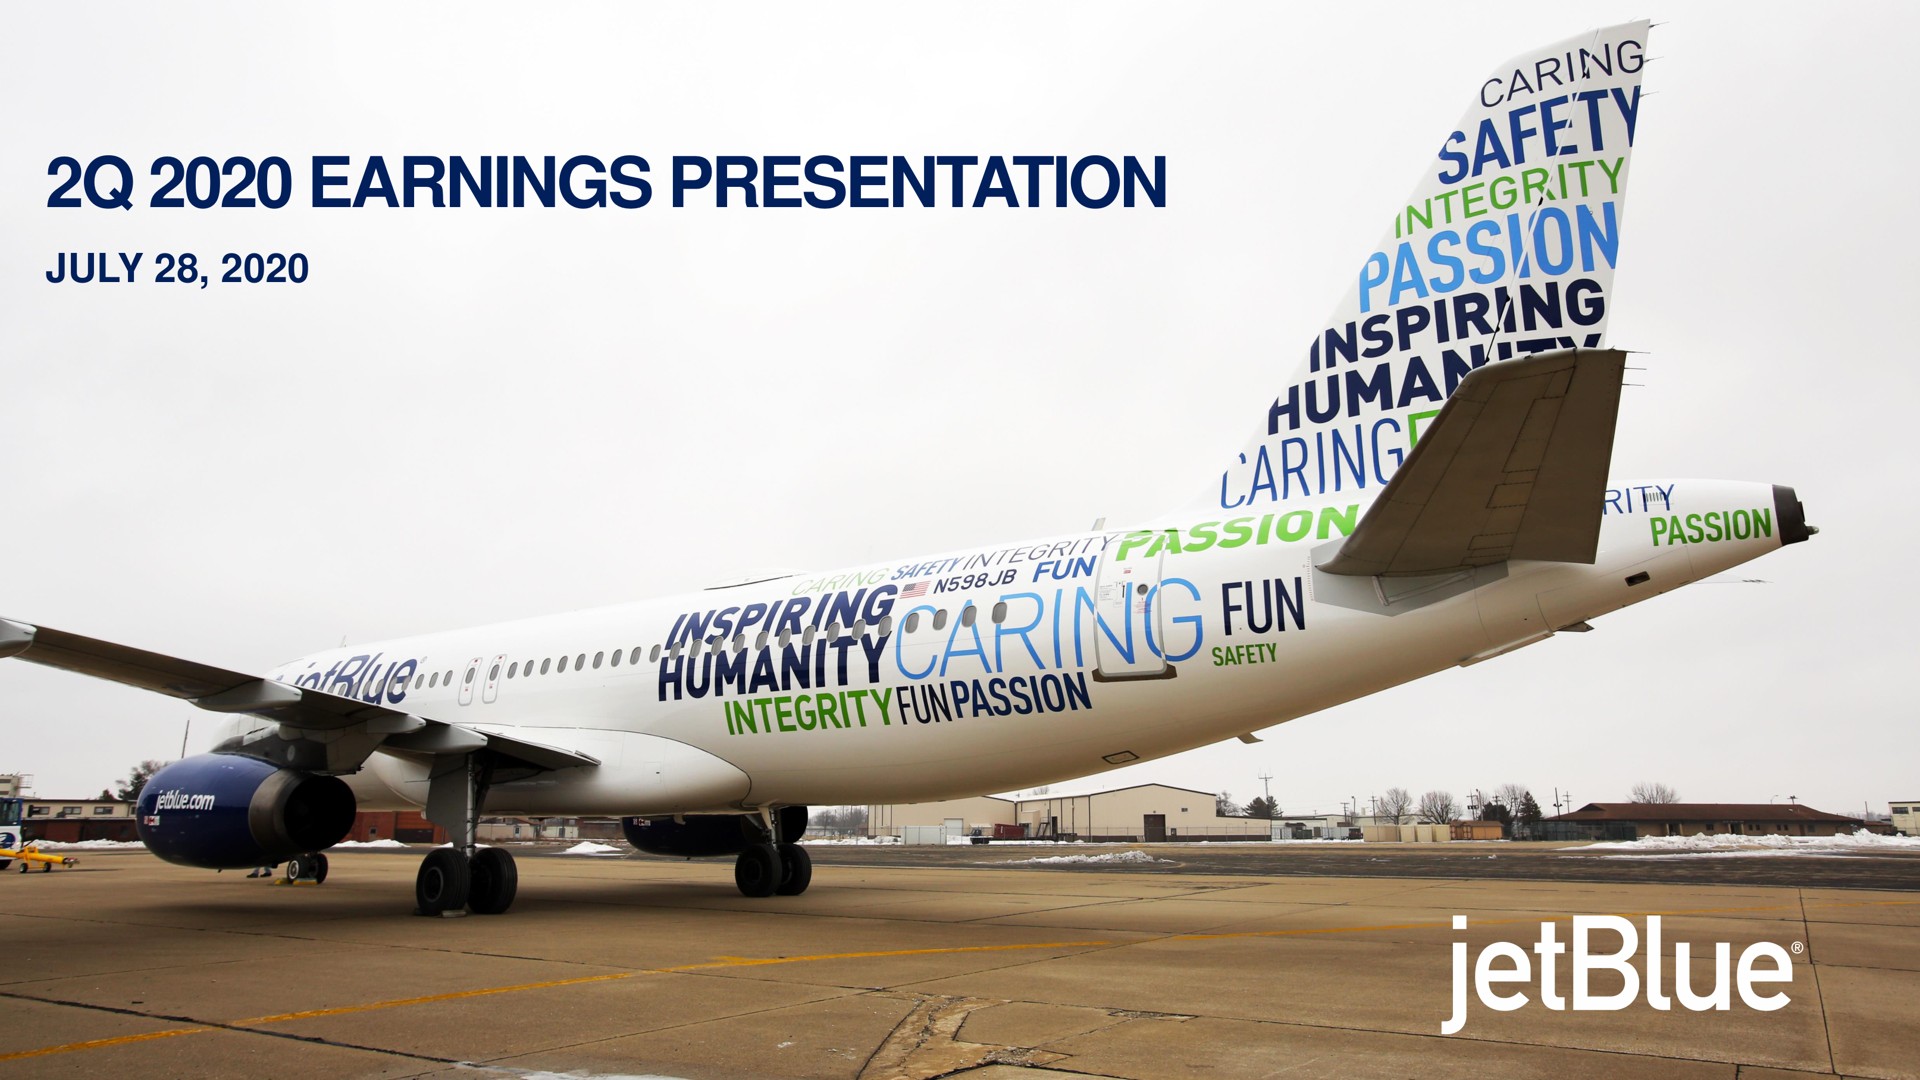 earnings presentation earning ais an integrity | jetBlue